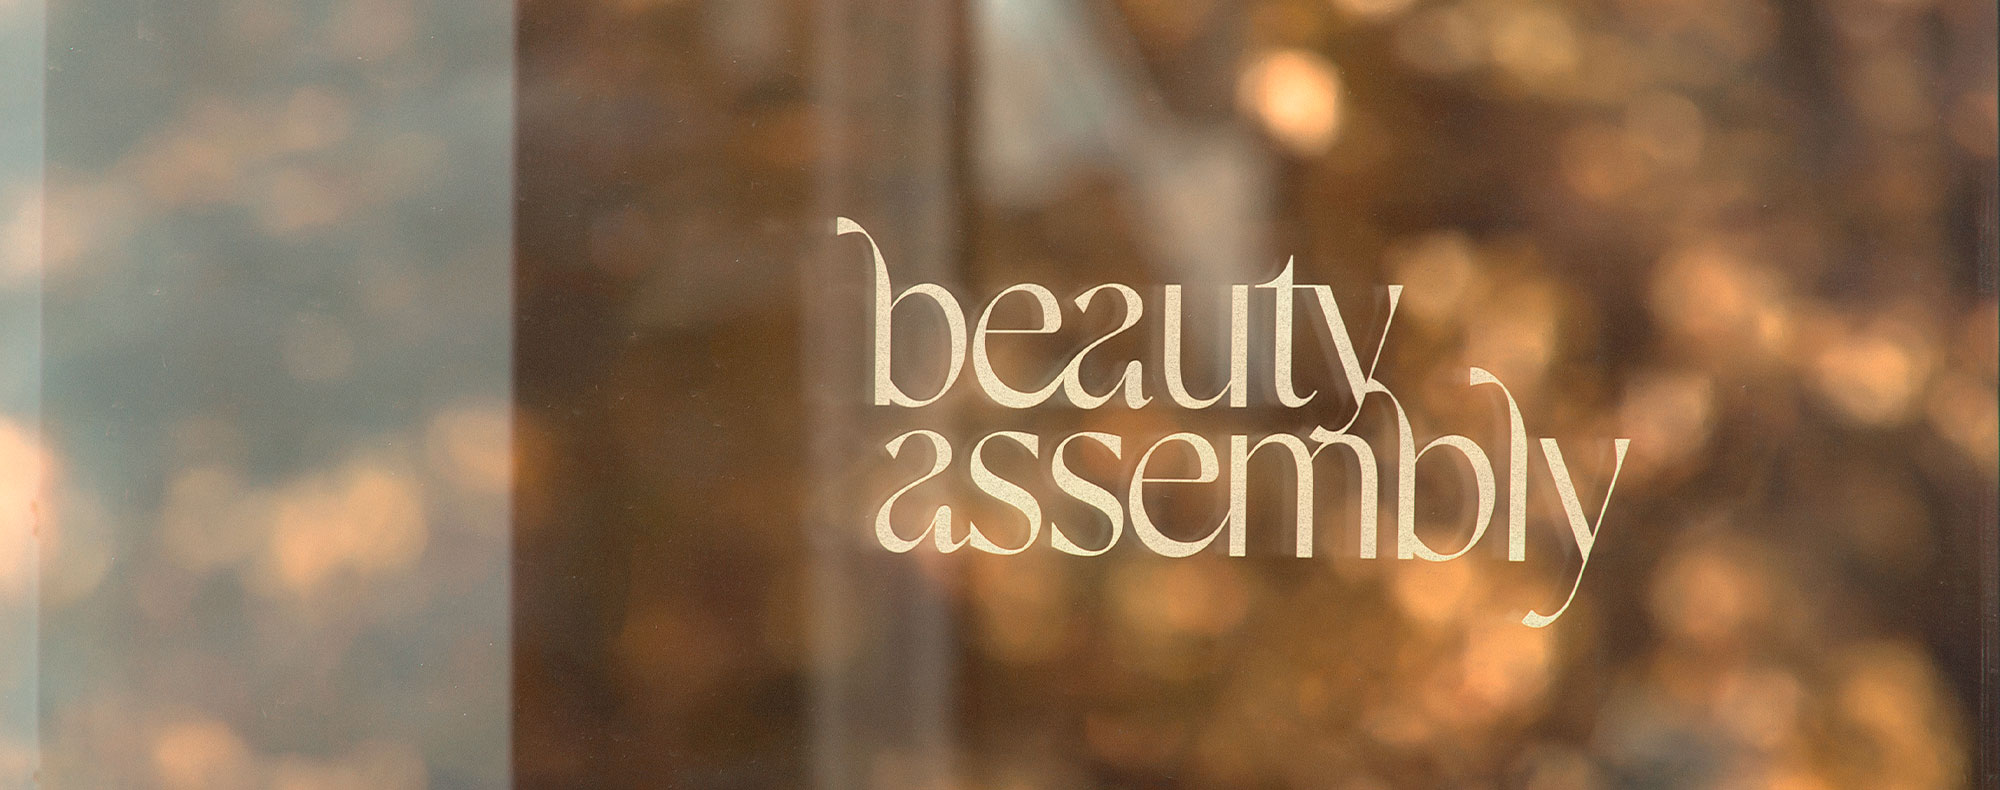 https://zestybrands.ca/wp-content/uploads/2022/11/branding-agency-in-vancouver-zesty-brands-salon-design-beauty-assembly.jpg